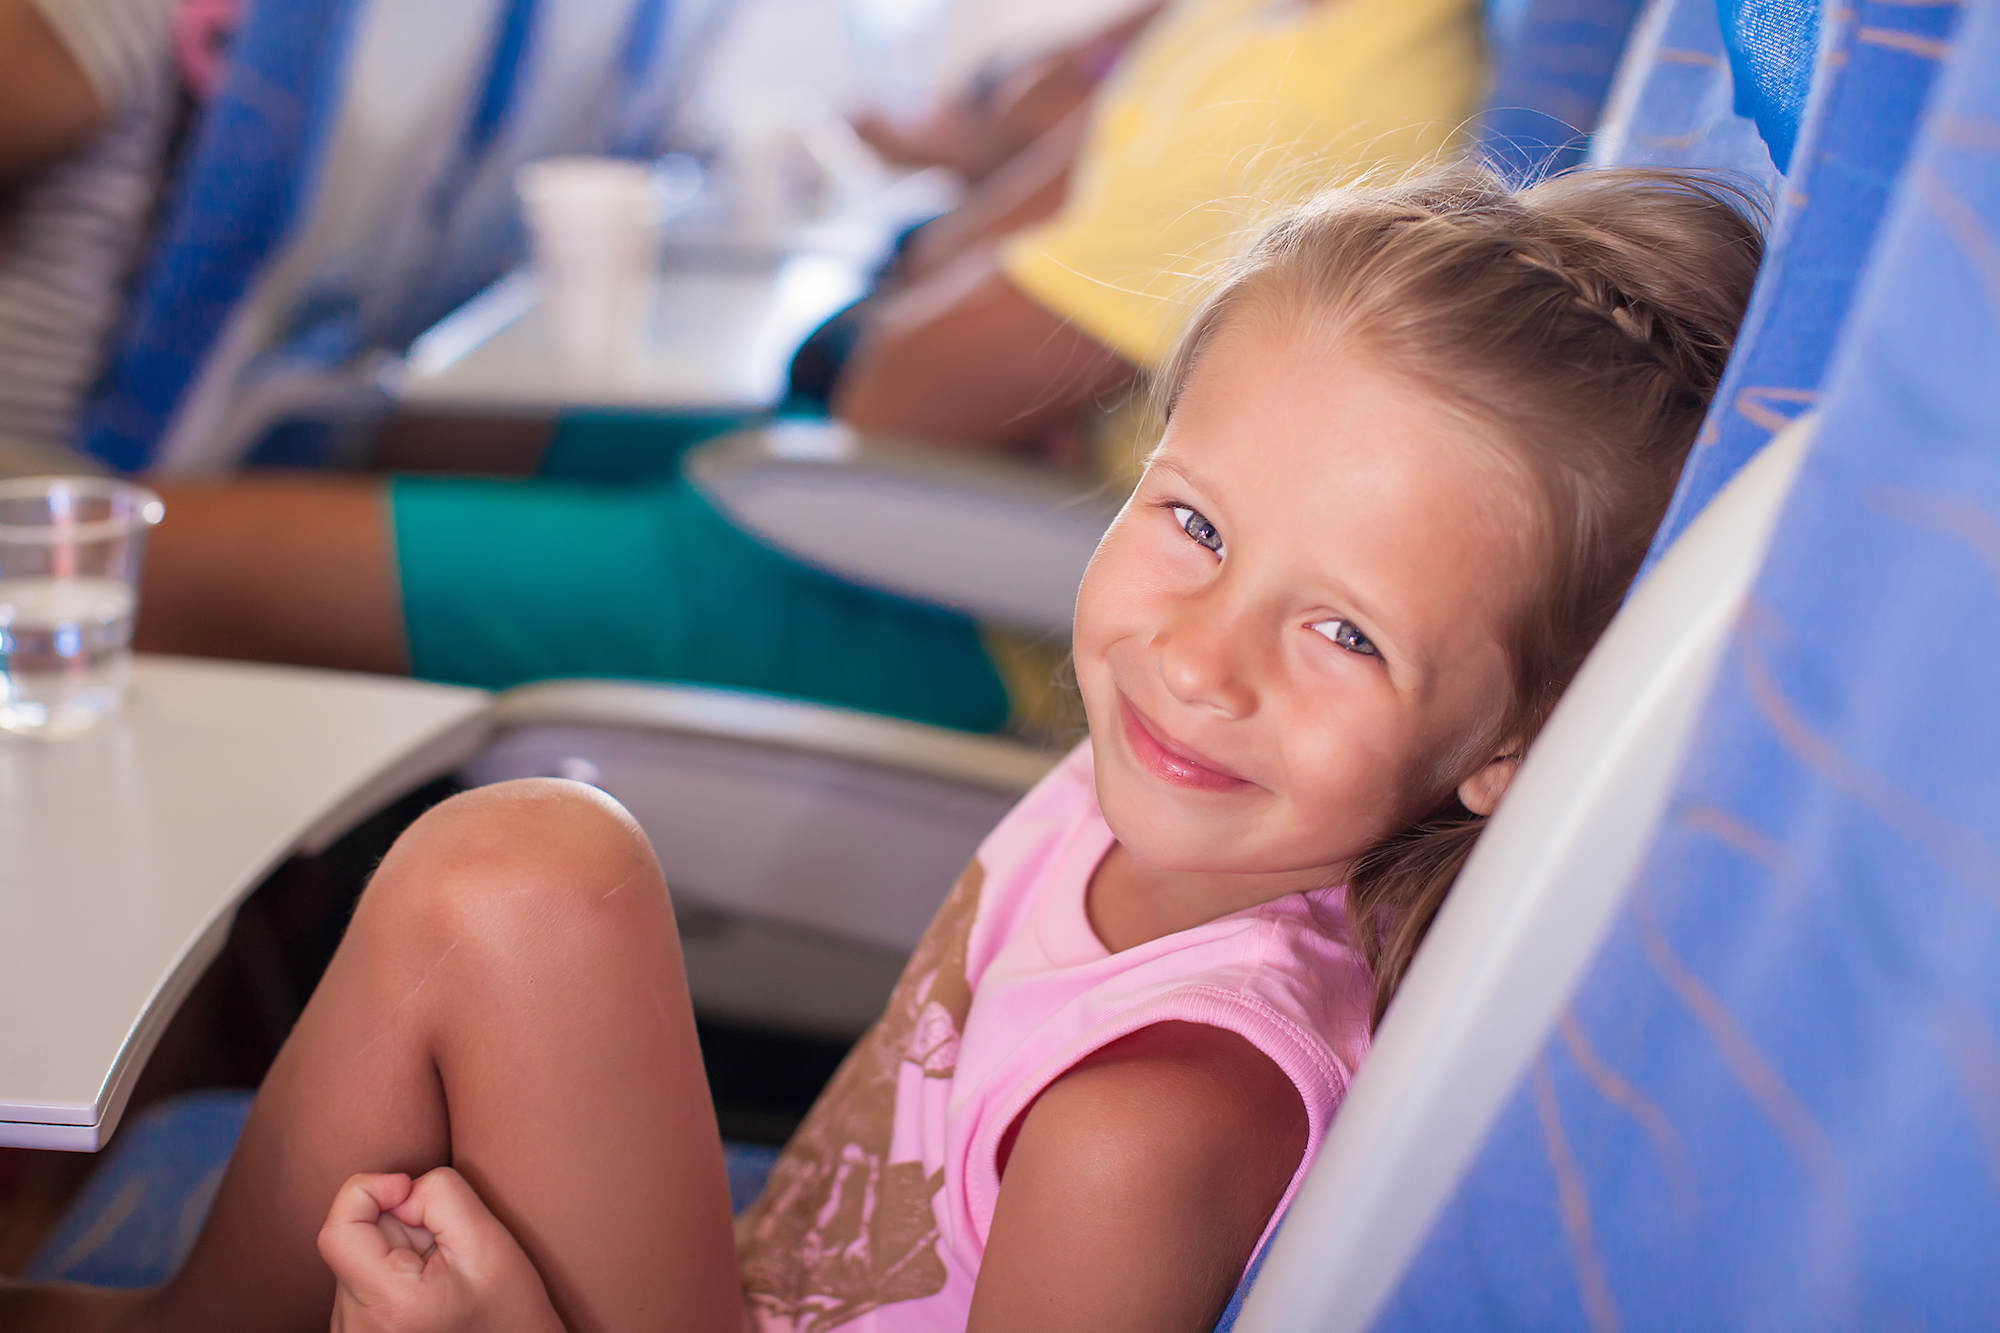 Goed nieuws ouders! Offline kinderfilms in vliegtuig